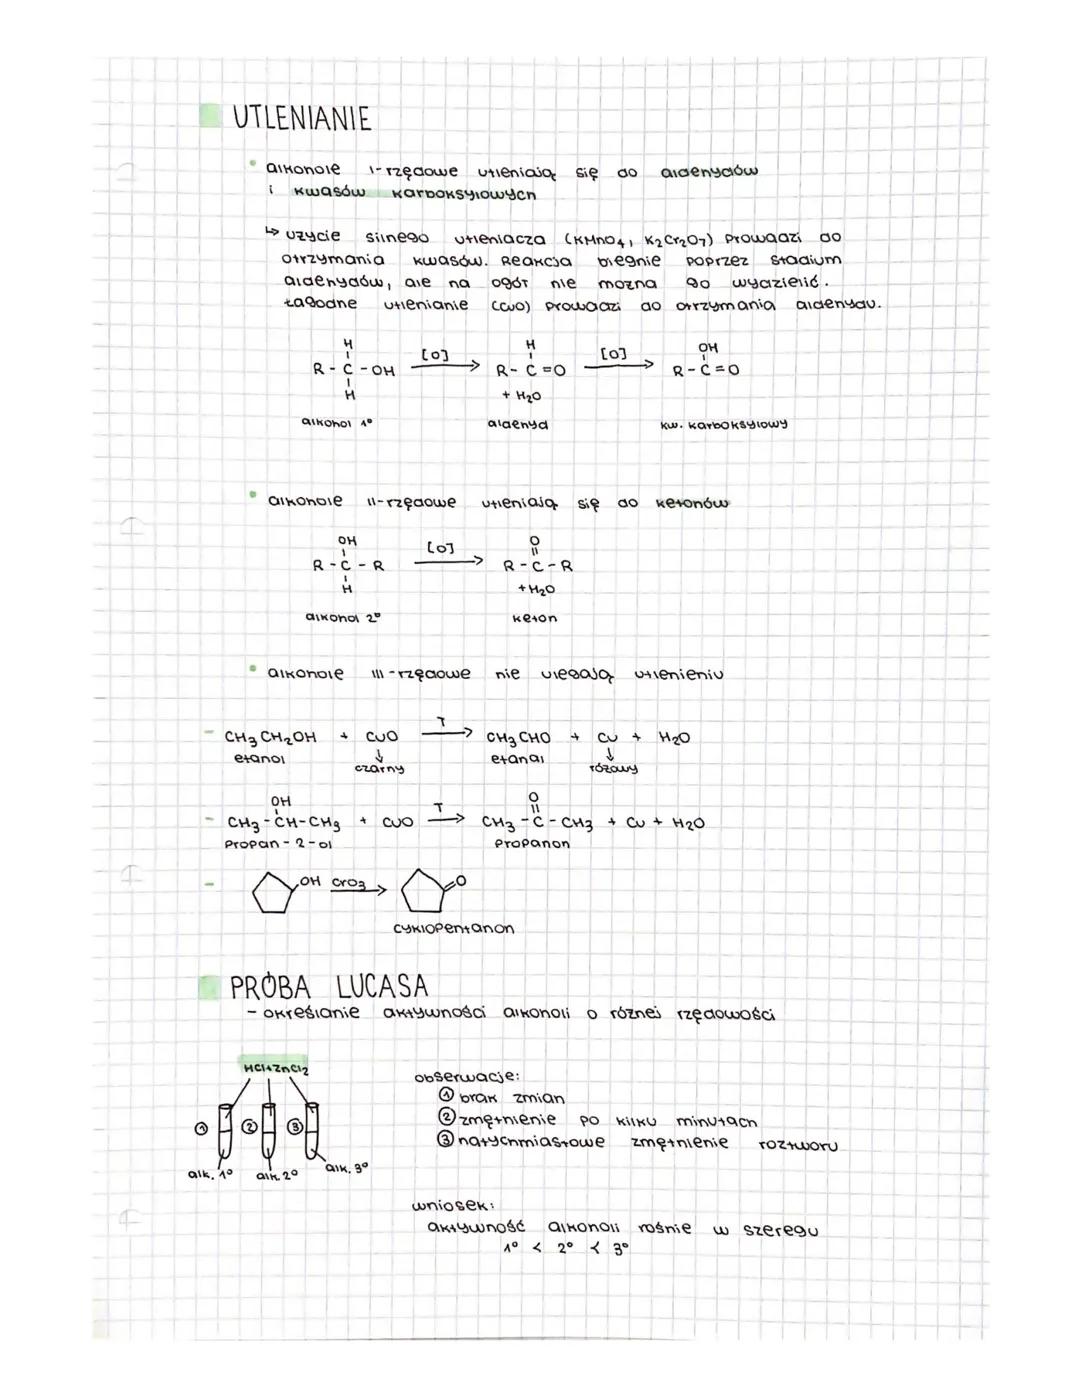 alkohole
w swajej
-Pochodne węglowodorów zawierające
cząsteczce grupę
-OH
R-OH
SZEREG HOMOLOGICZNY
CH₂OH
CH₂OH
C₂H5OH
C3H7OH
R- grupa węglow